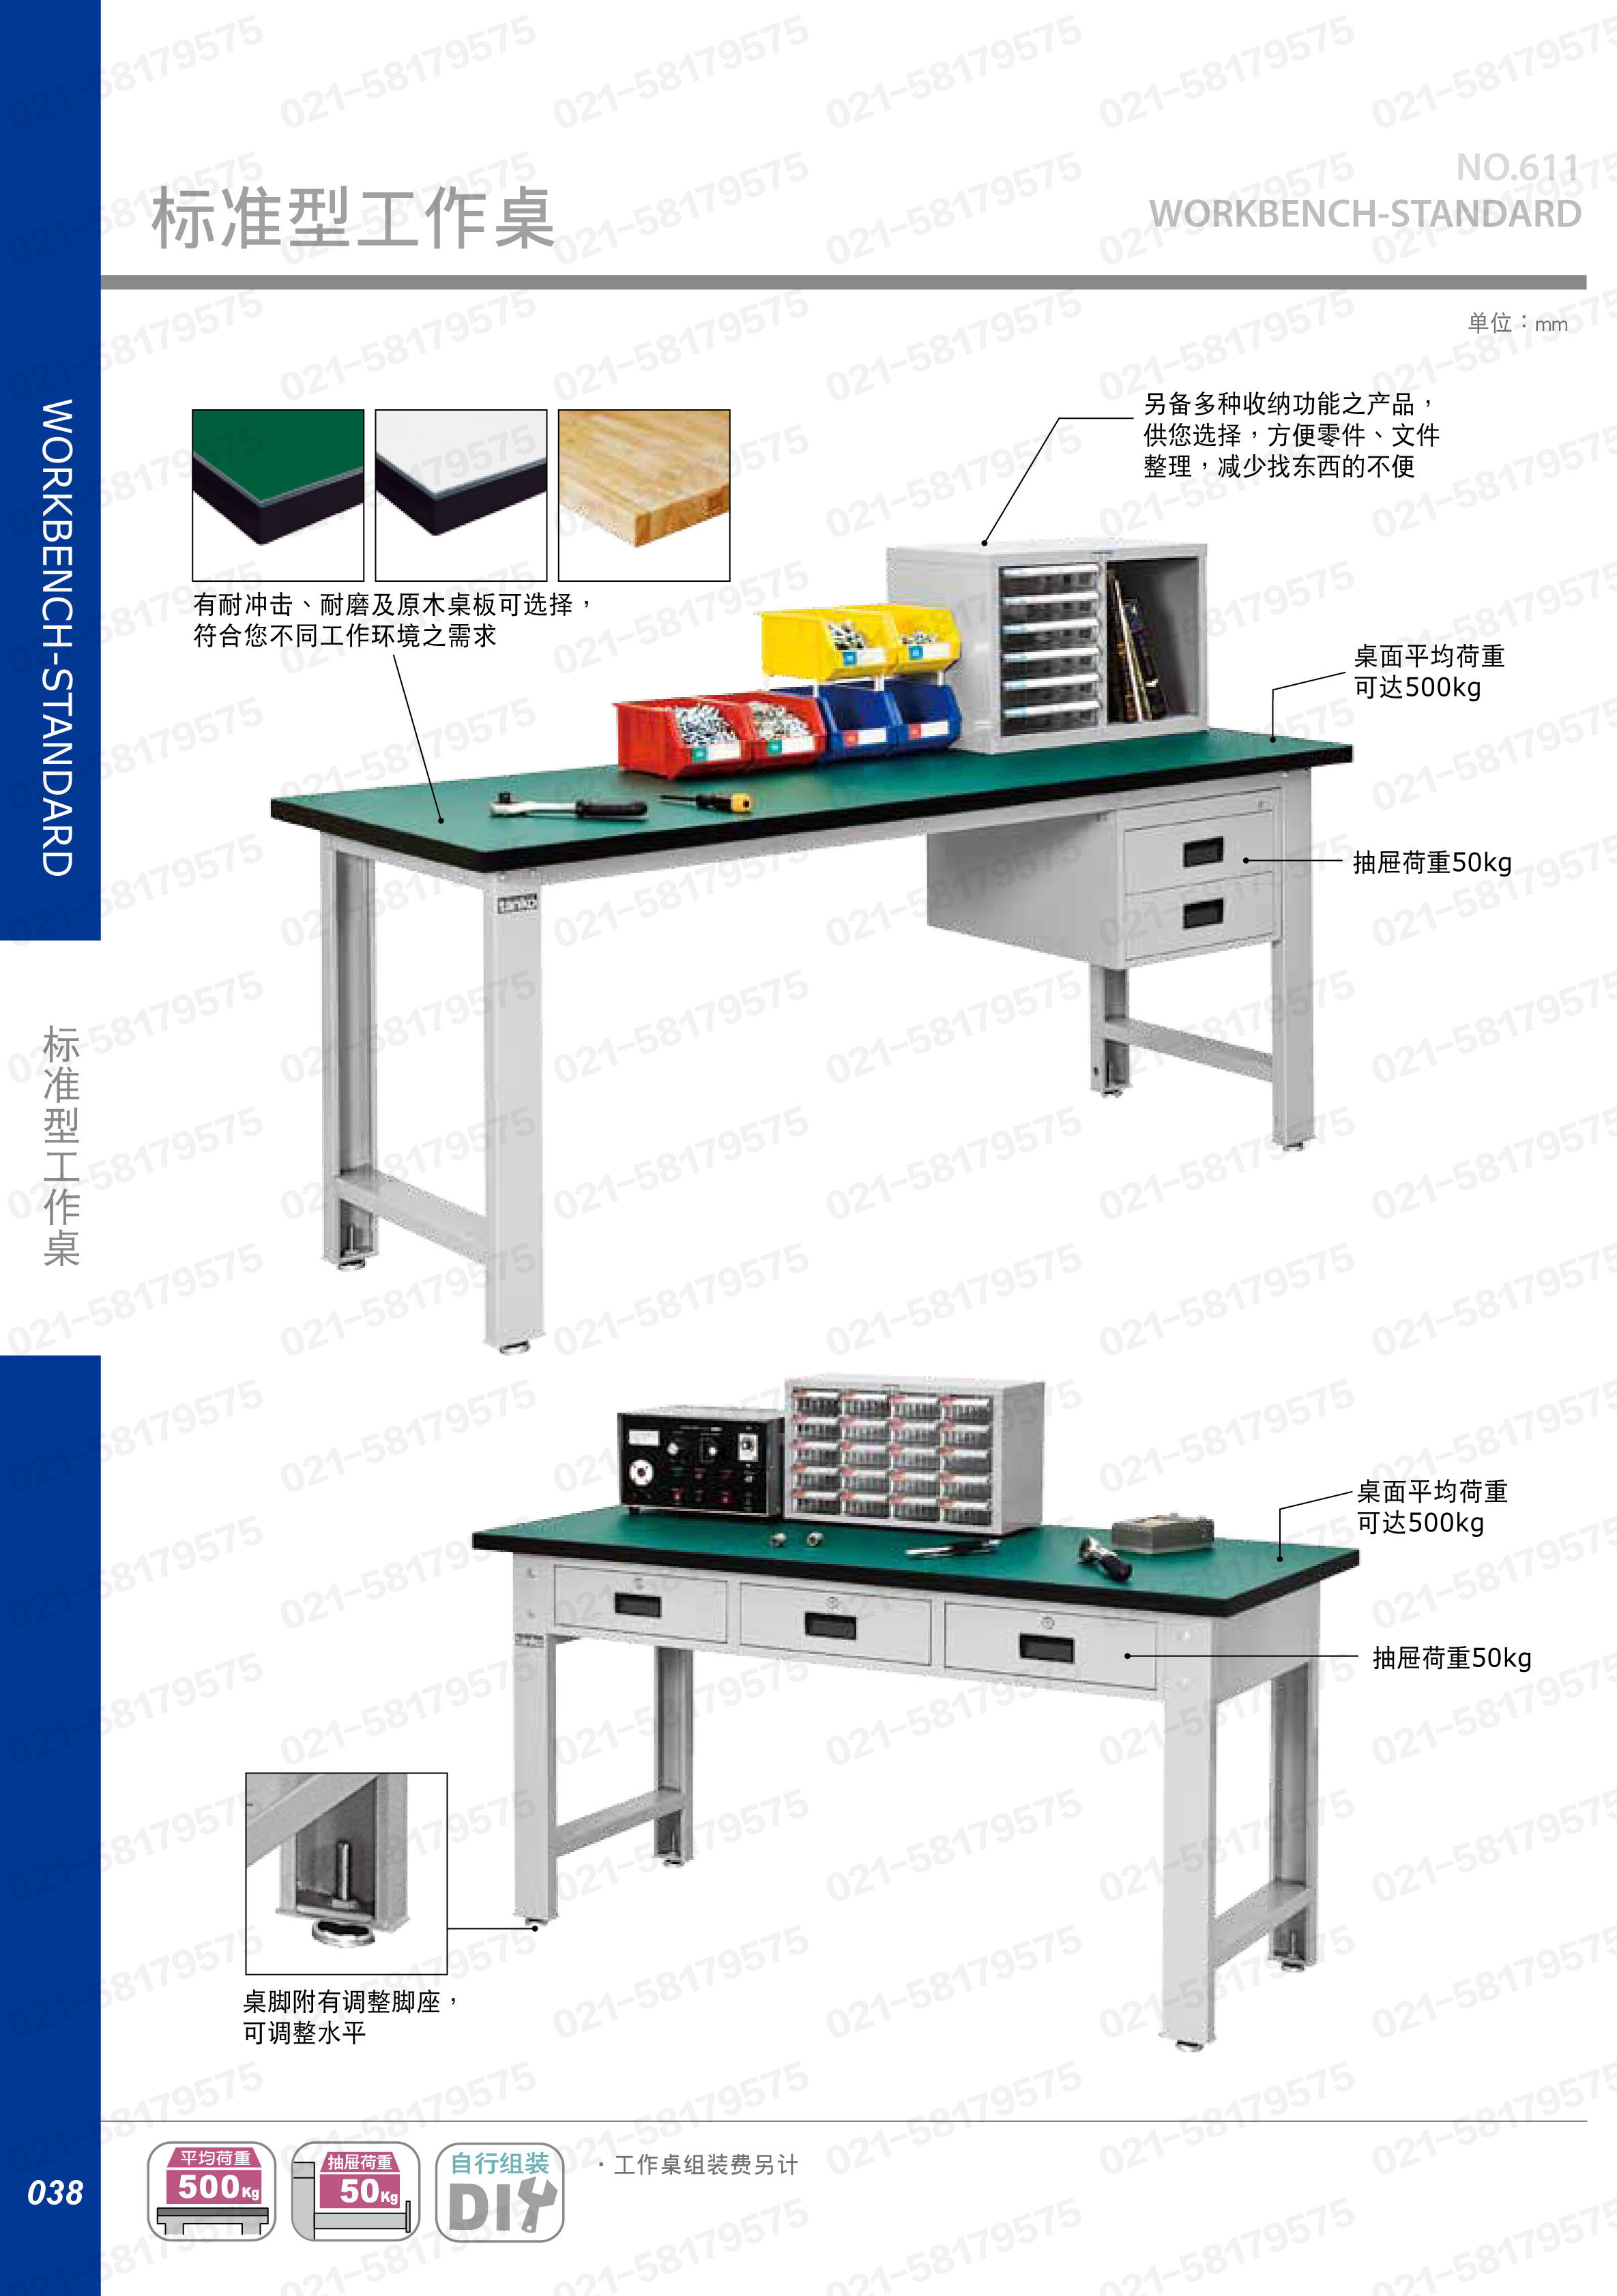 轻型工作桌1800×750×800mm 耐磨桌板,WB-67F,5D2931